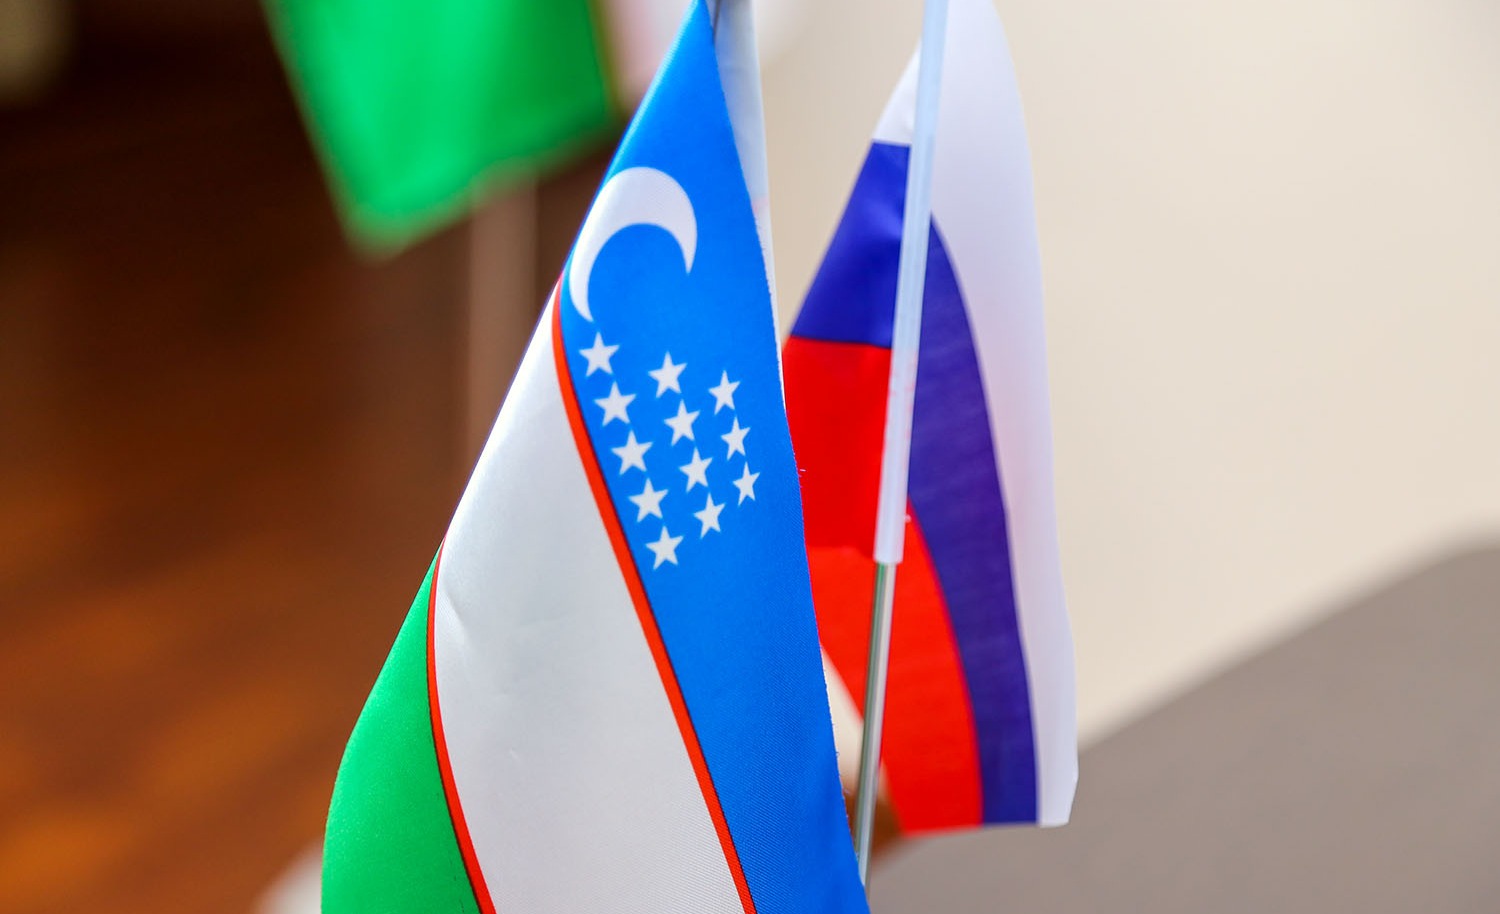 Узбекистан и Россия заключили соглашения на 8,9 млрд долларов